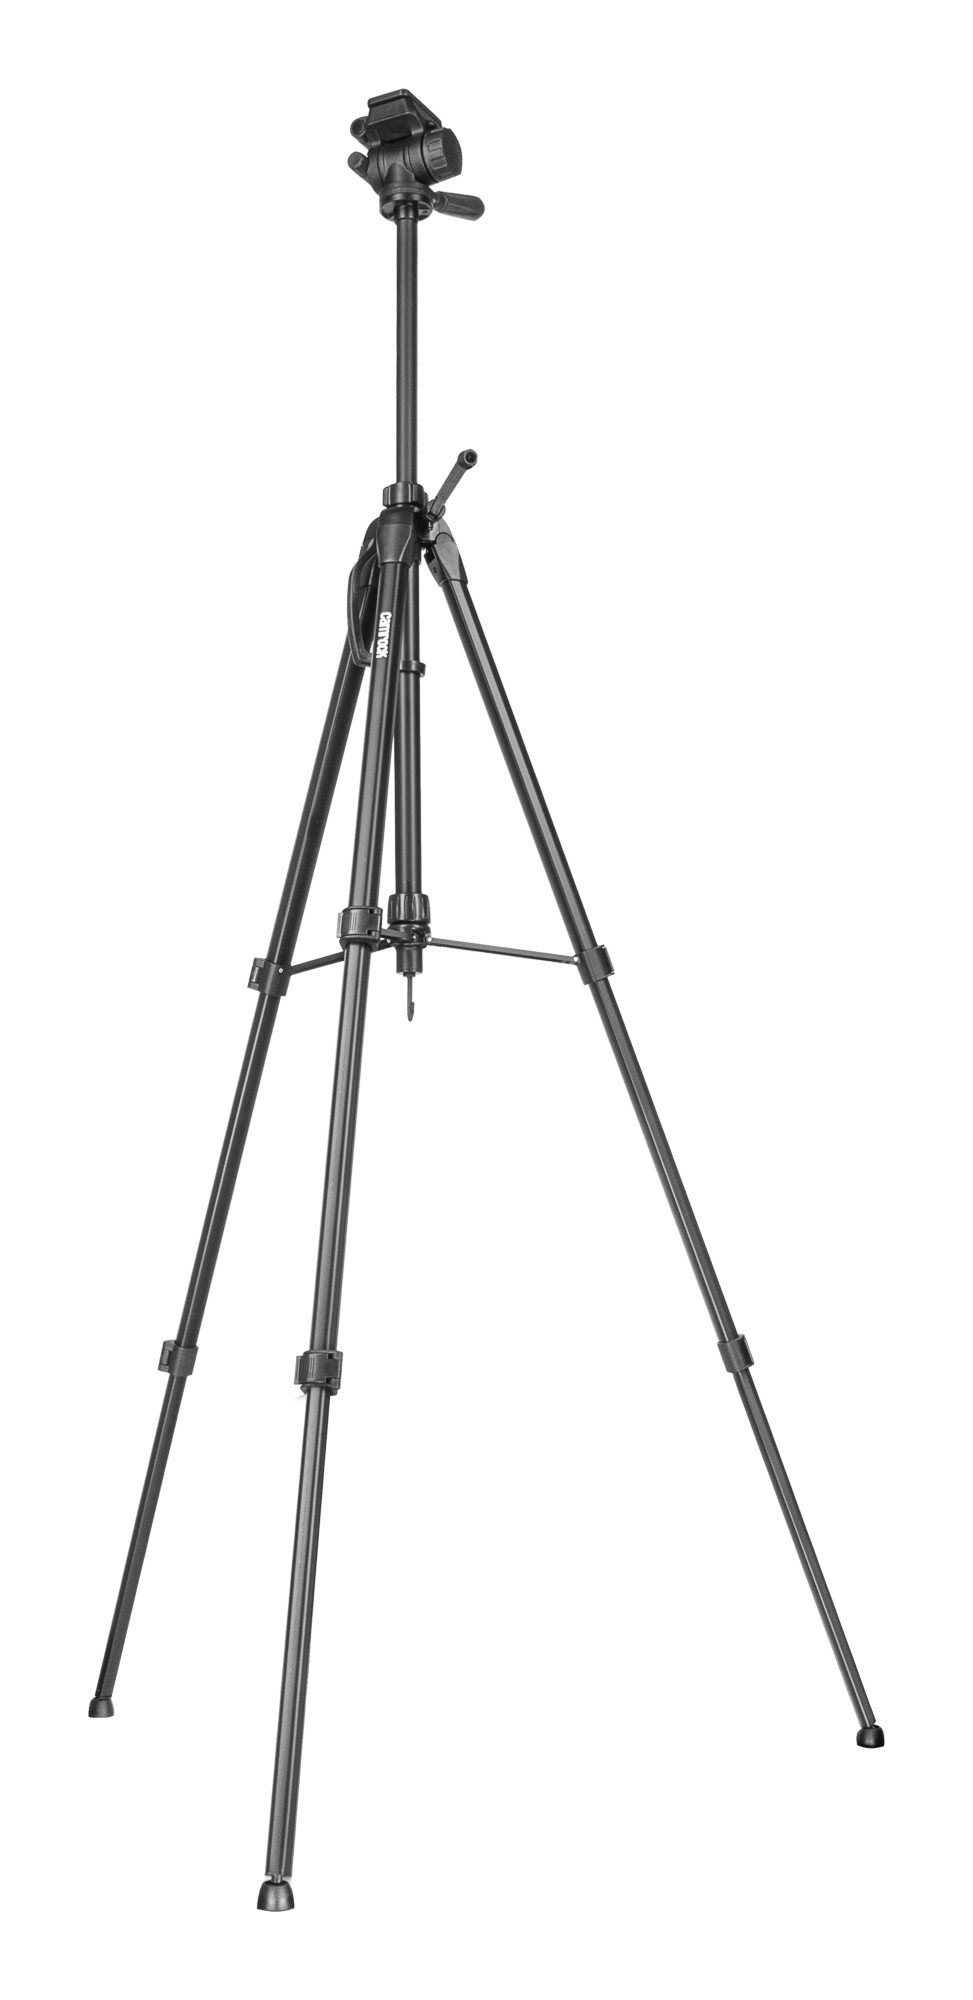 CAMROCK TH70 170cm wysoki statyw do bezlusterkowca, lustrzanki lub kompaktowego aparatu